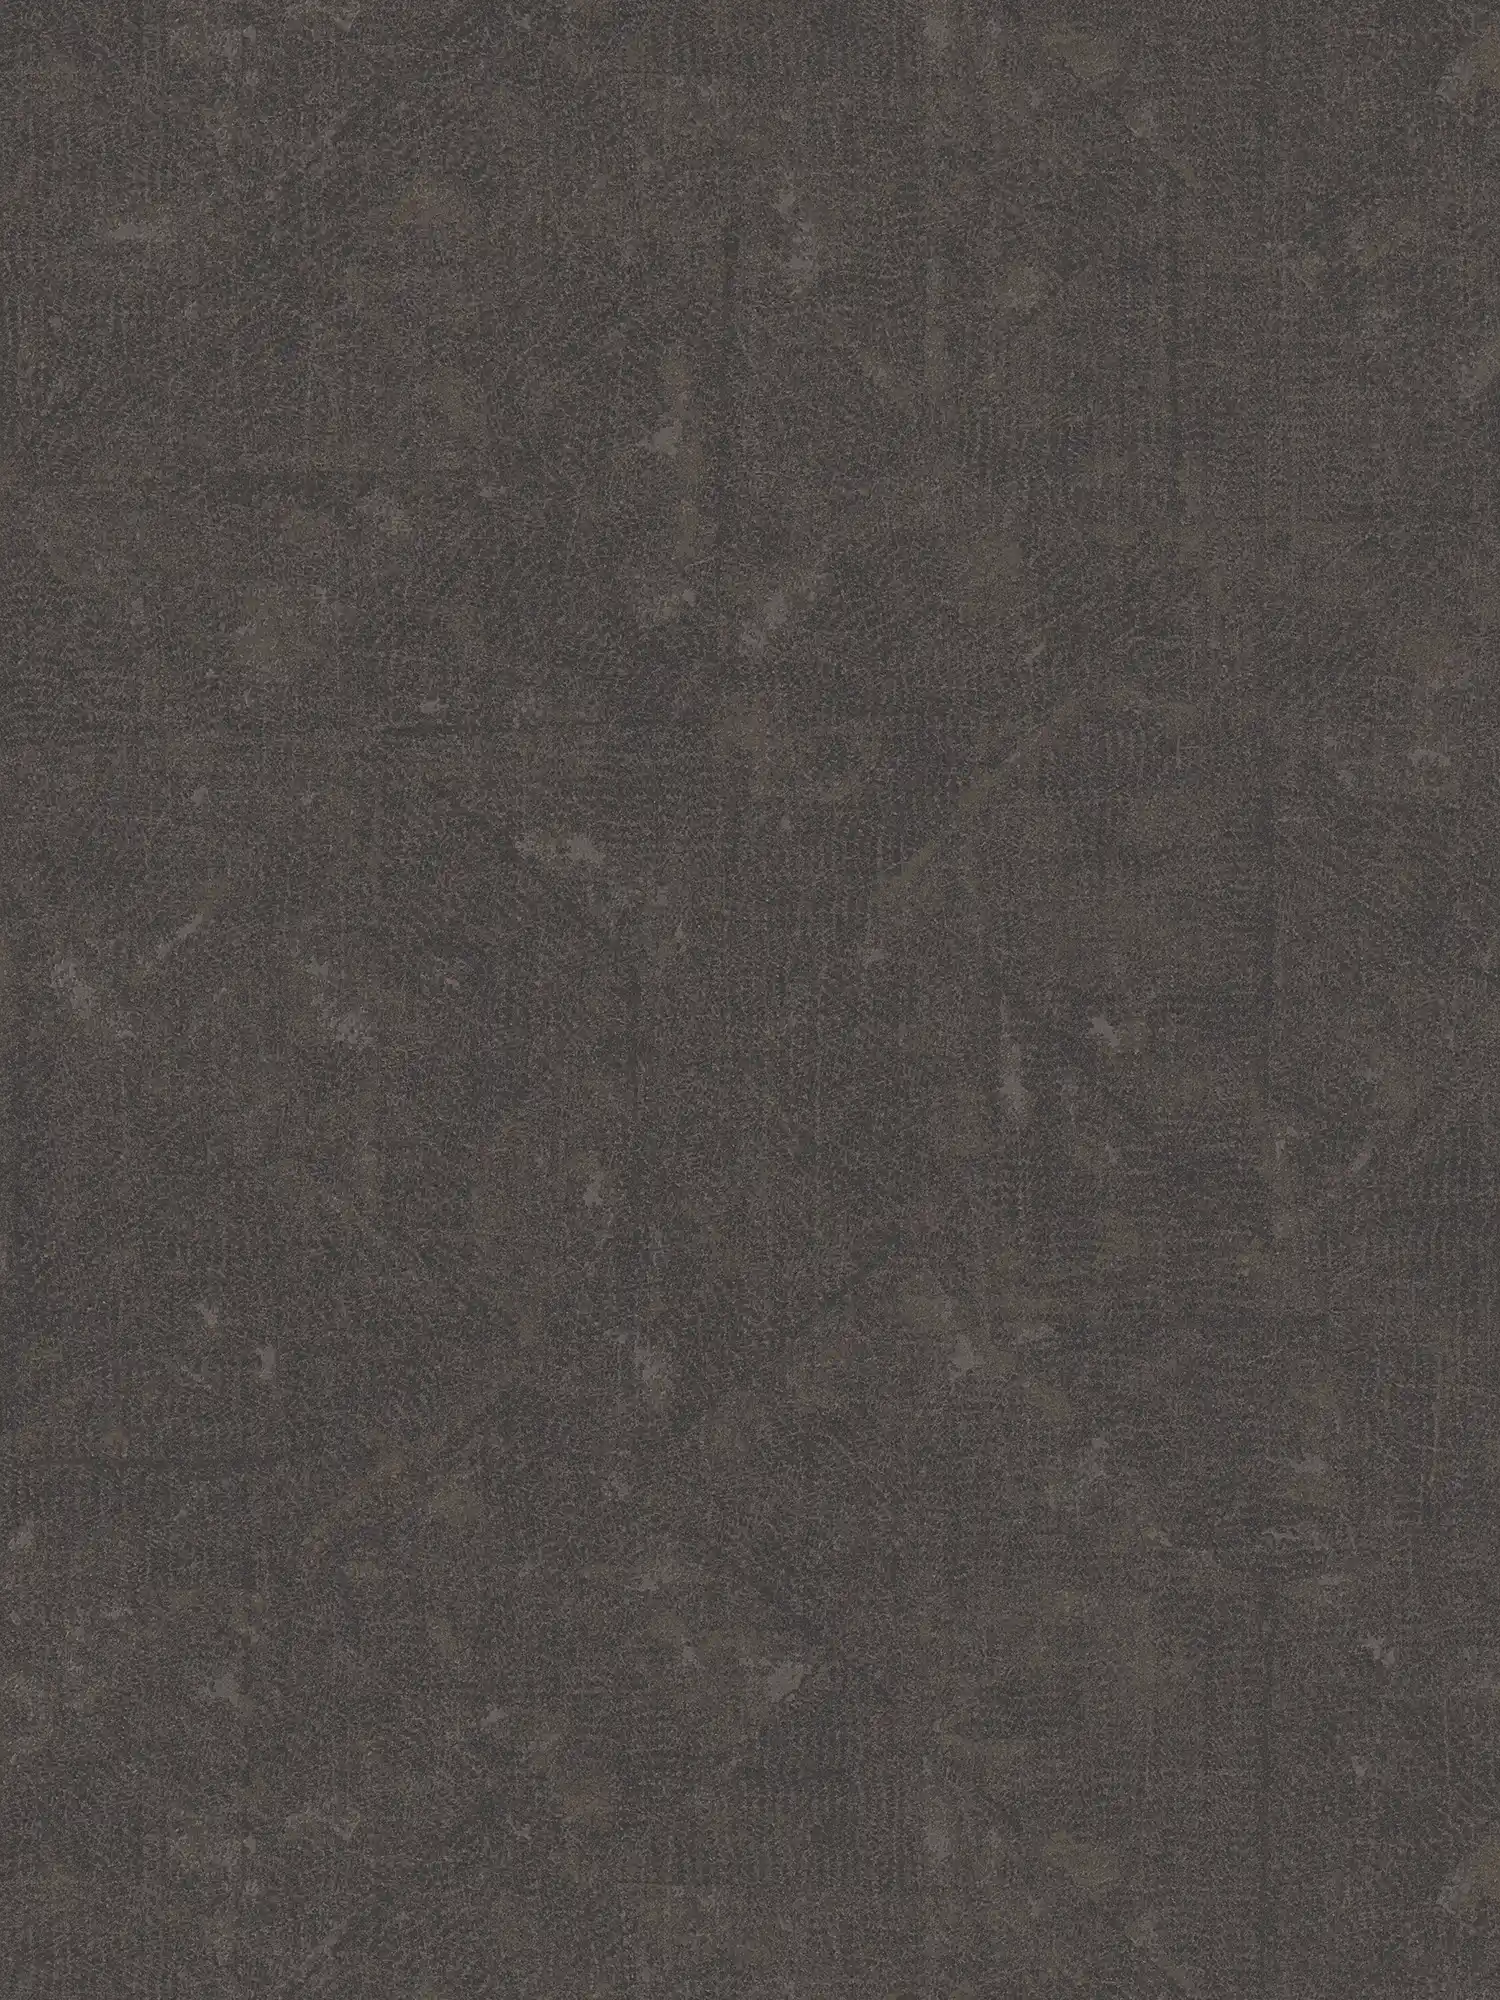 Papel pintado no tejido de color marrón oscuro con sutiles dibujos - marrón, negro, bronce
